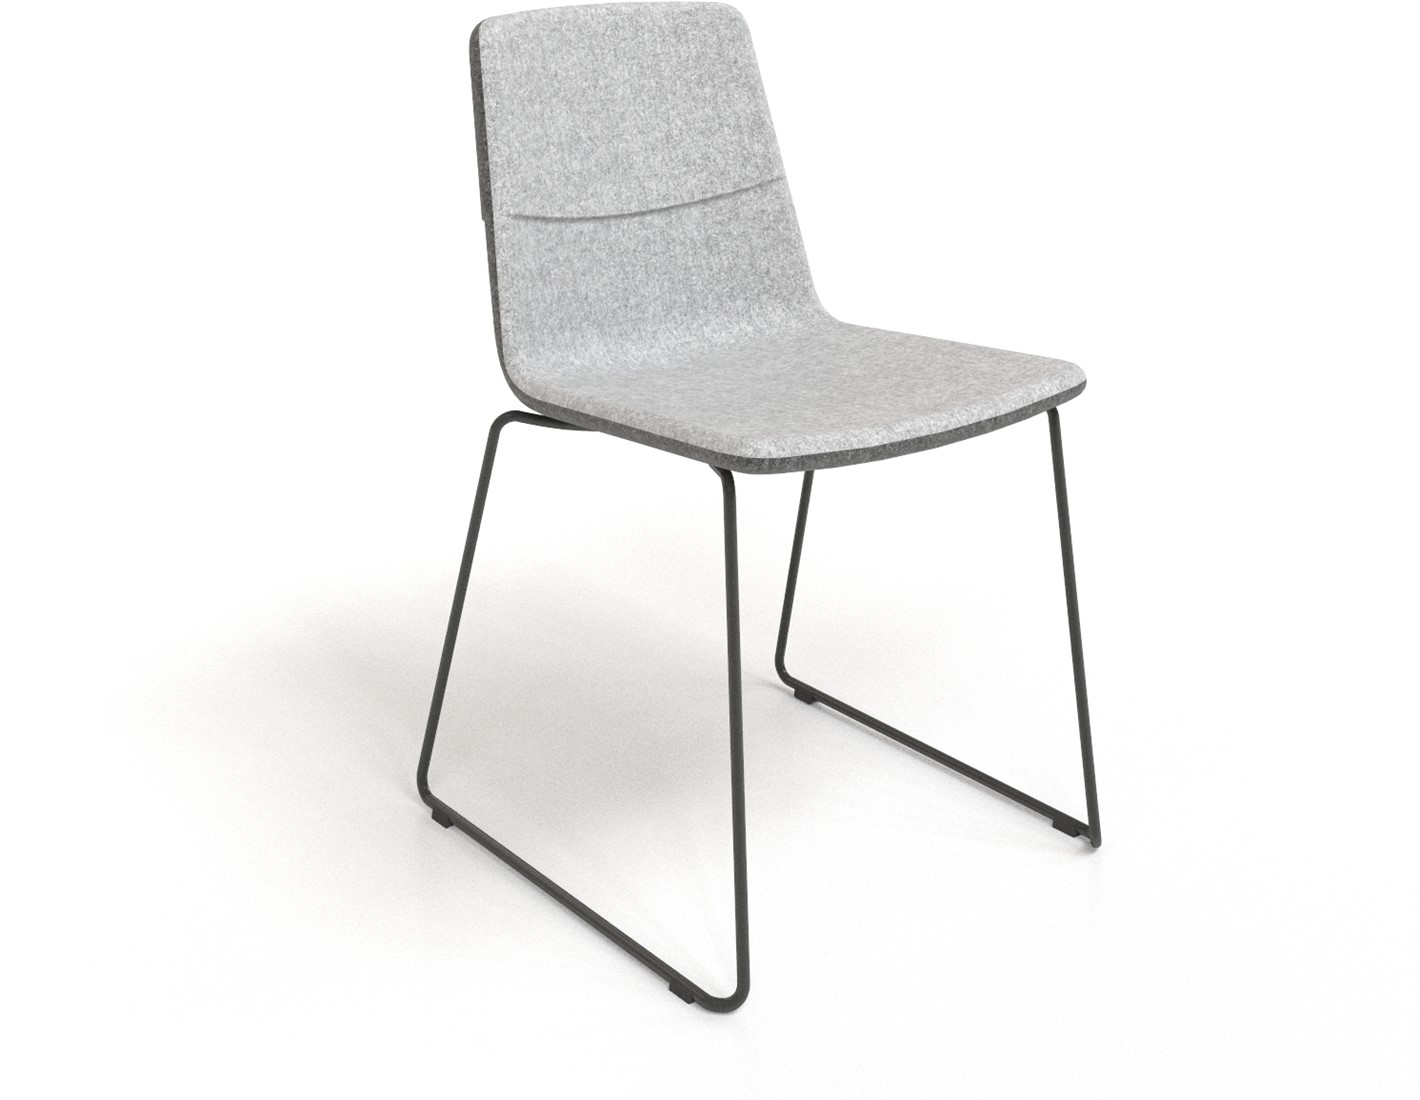 gek geworden overschot zonde Deze elegante stoel TWIST&SIT is geschikt als kantine-, vergader-,  wachtkamer- of eettafelstoel